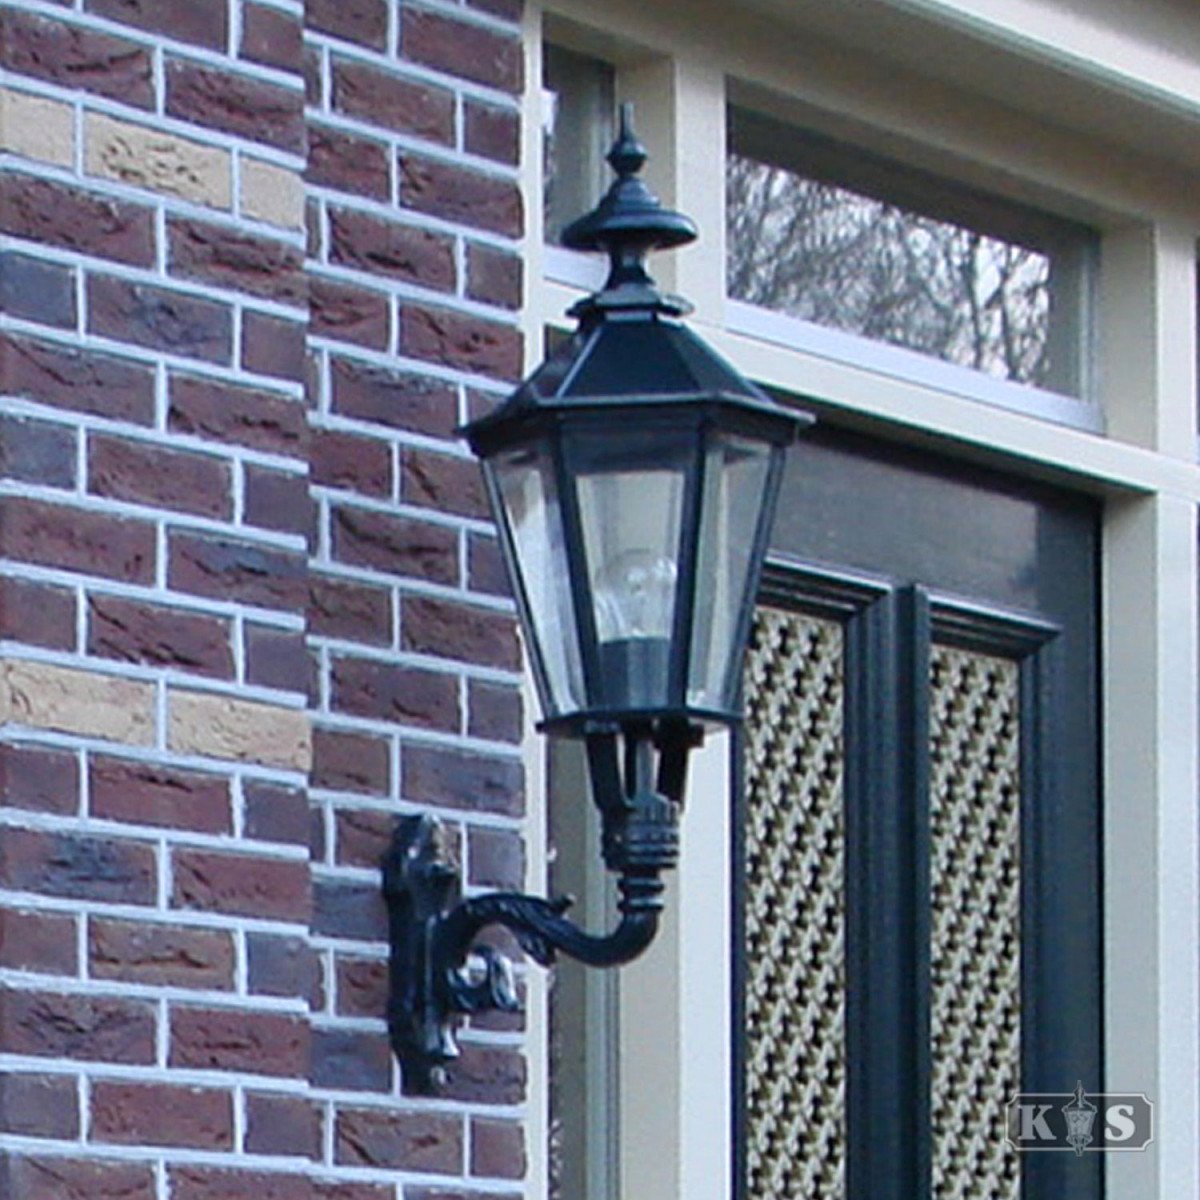 Applique montante M 31 (1182) - éclairage extérieur avec lanterne six faces